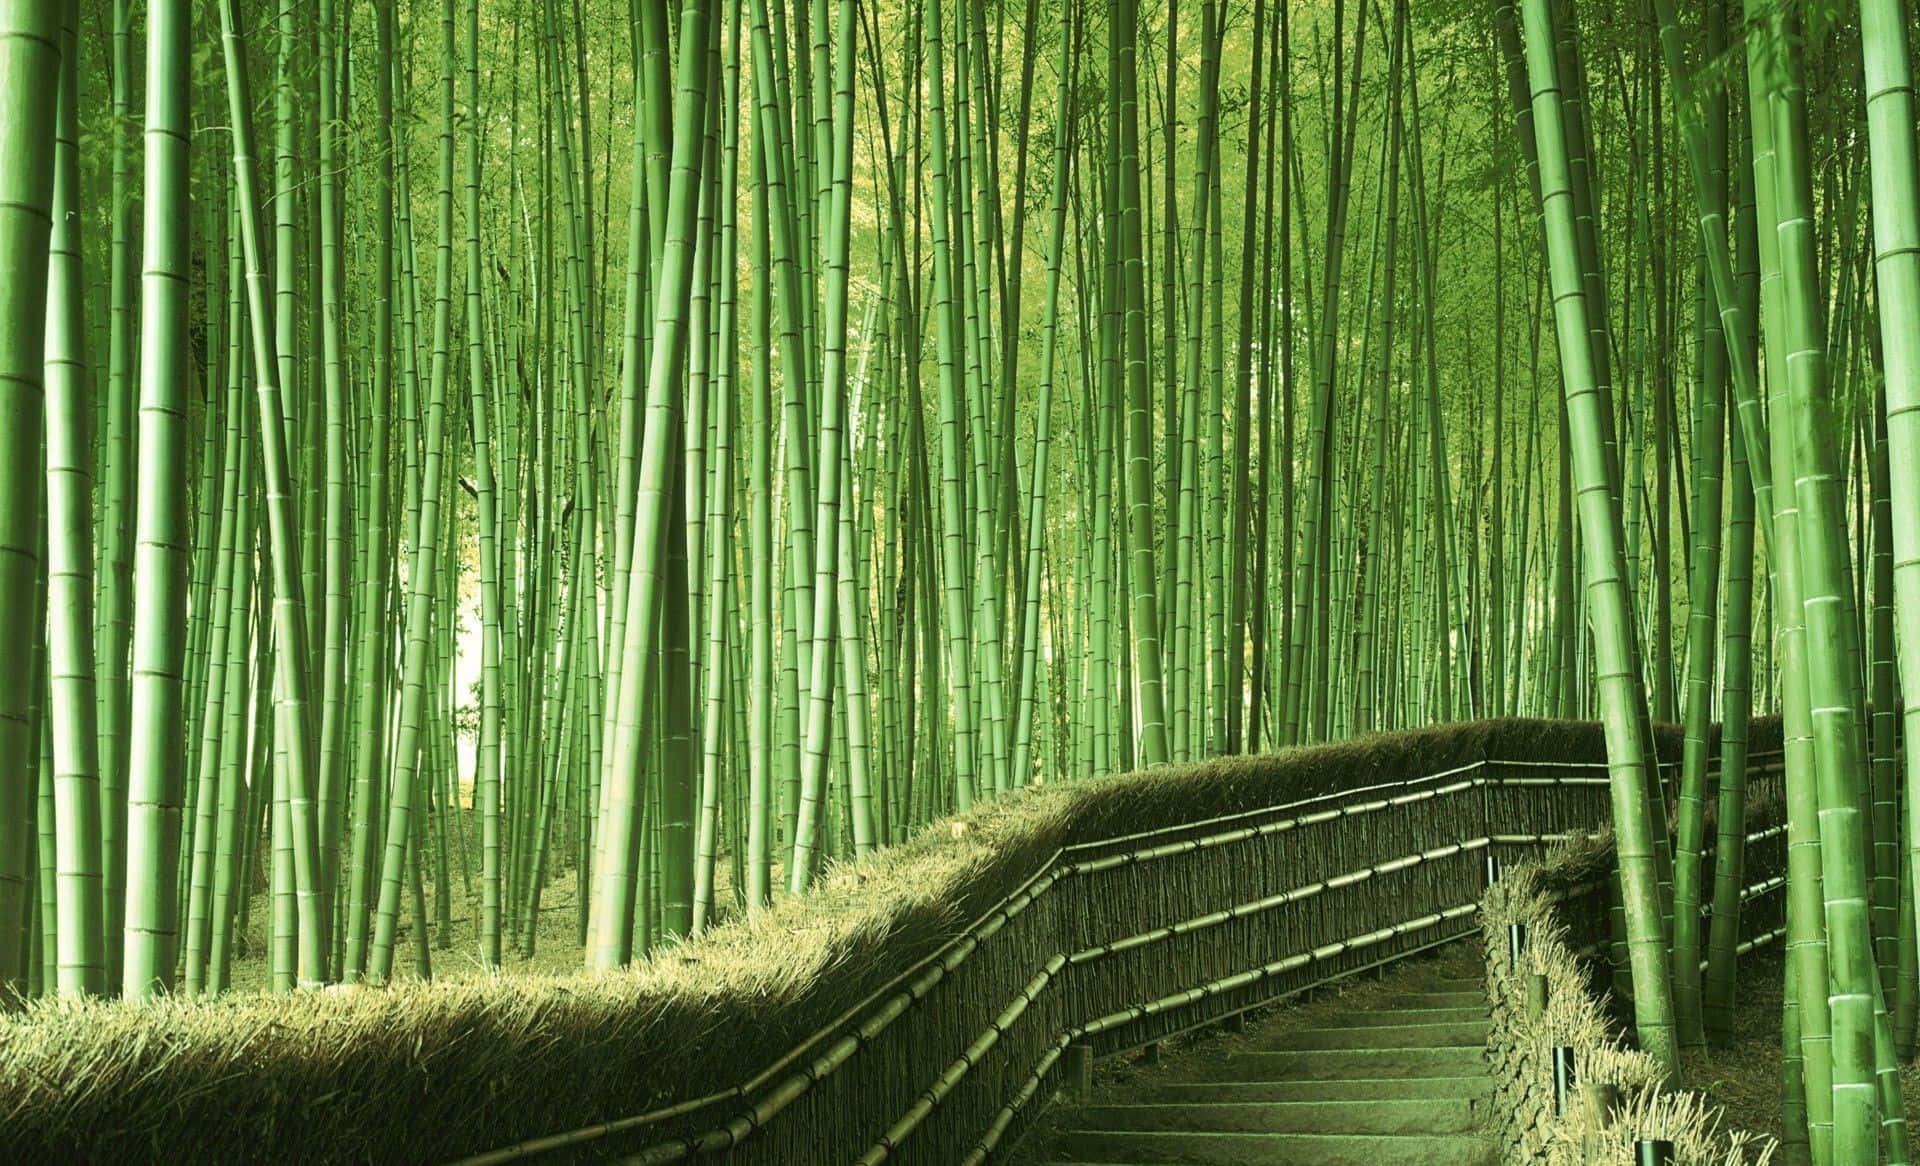 Unlungo E Robusto Stelo Di Bamboo Che Spicca Nel Bellissimo Sfondo Della Natura.